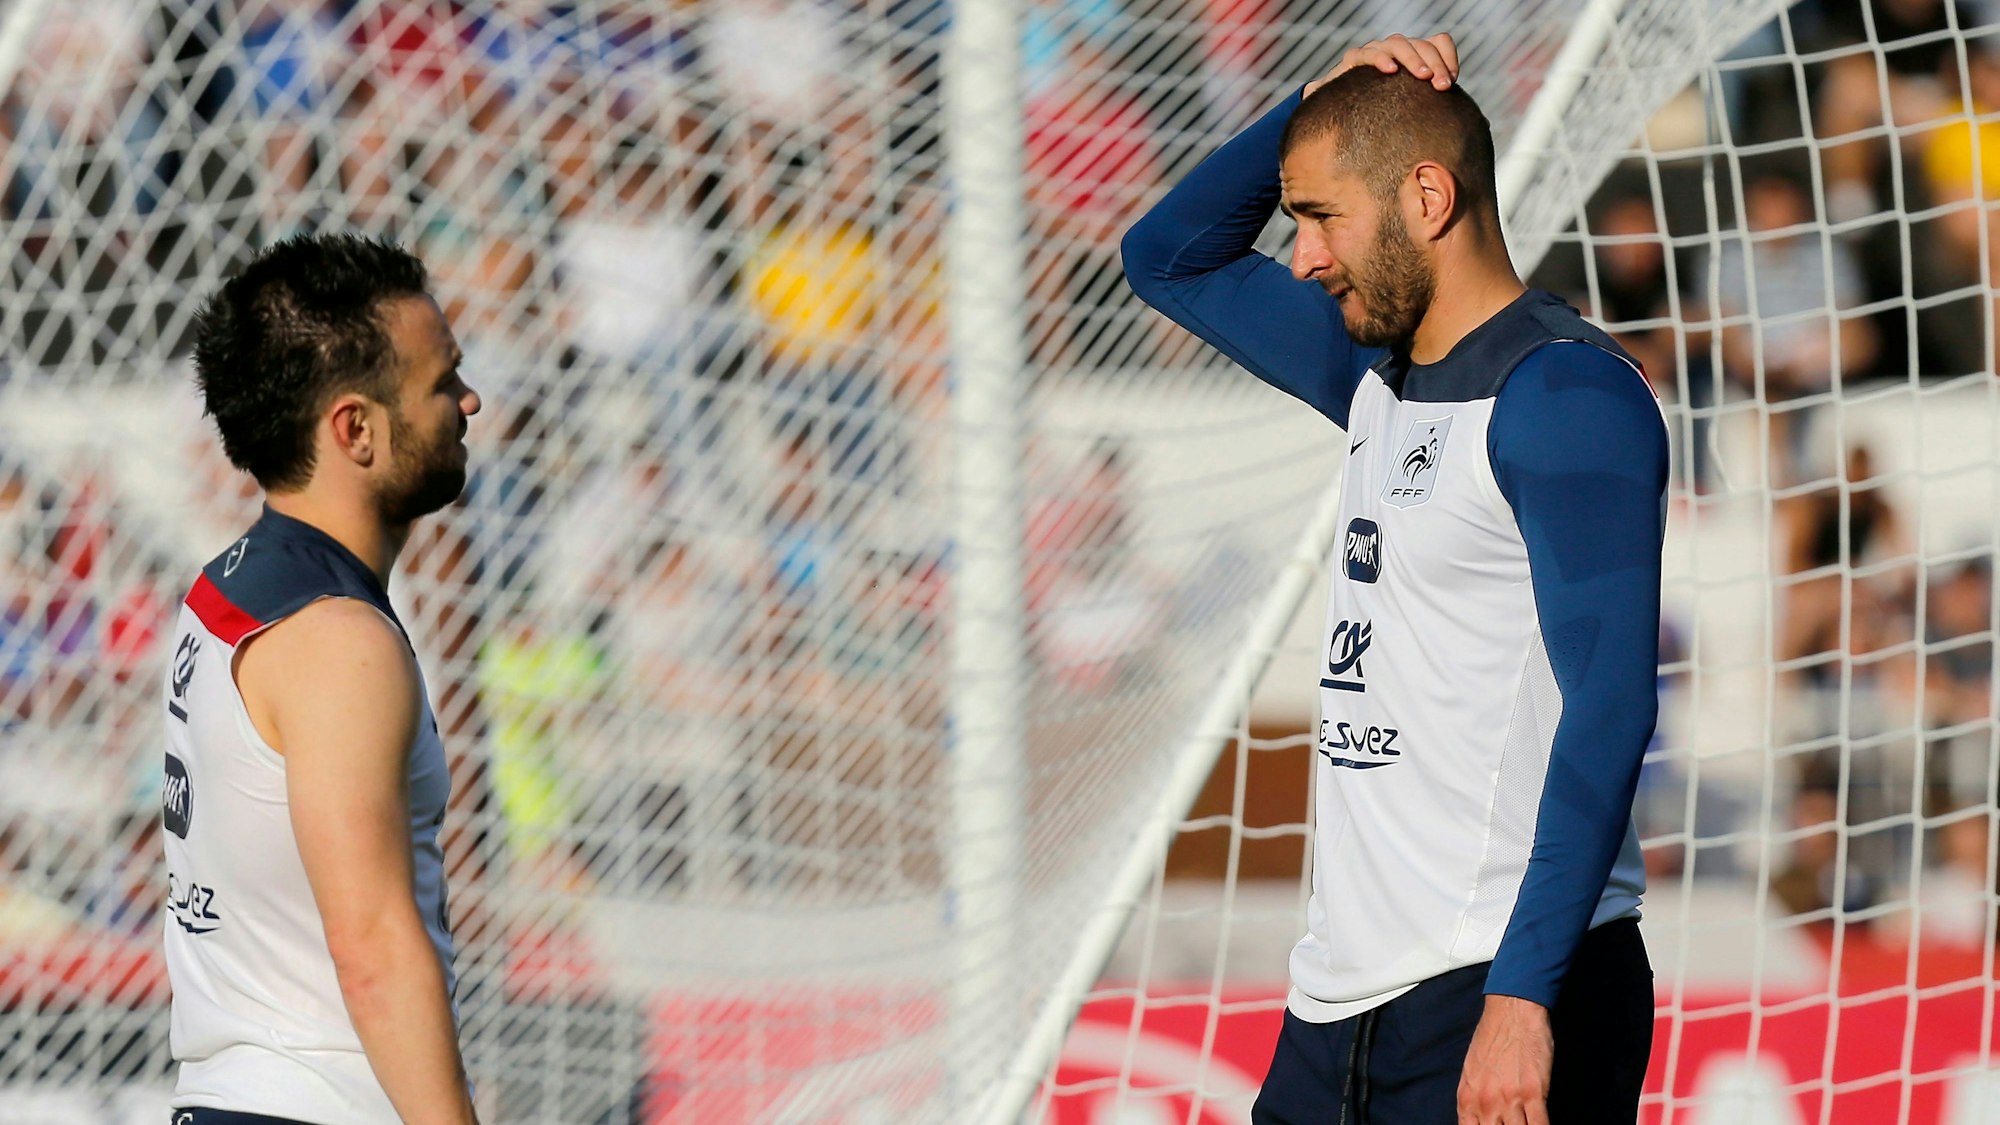 Die beiden früheren TeamkollegenMathieu Valbuena und Karim Benzema unterhalten sich.